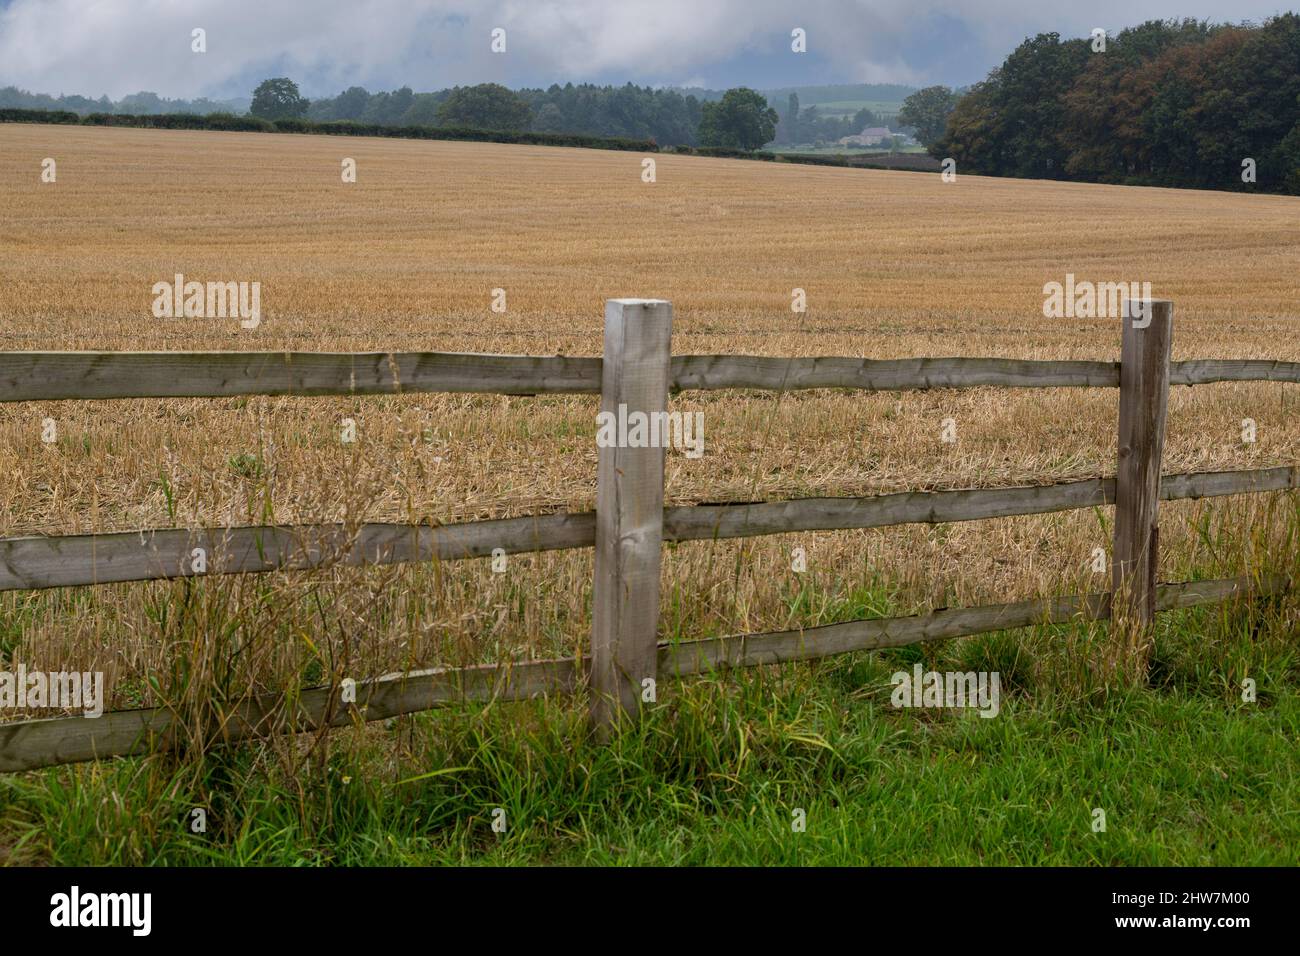 Royaume-uni, Angleterre, dans le Yorkshire. Le Yorkshire, terres agricoles Farm House dans la distance. Banque D'Images